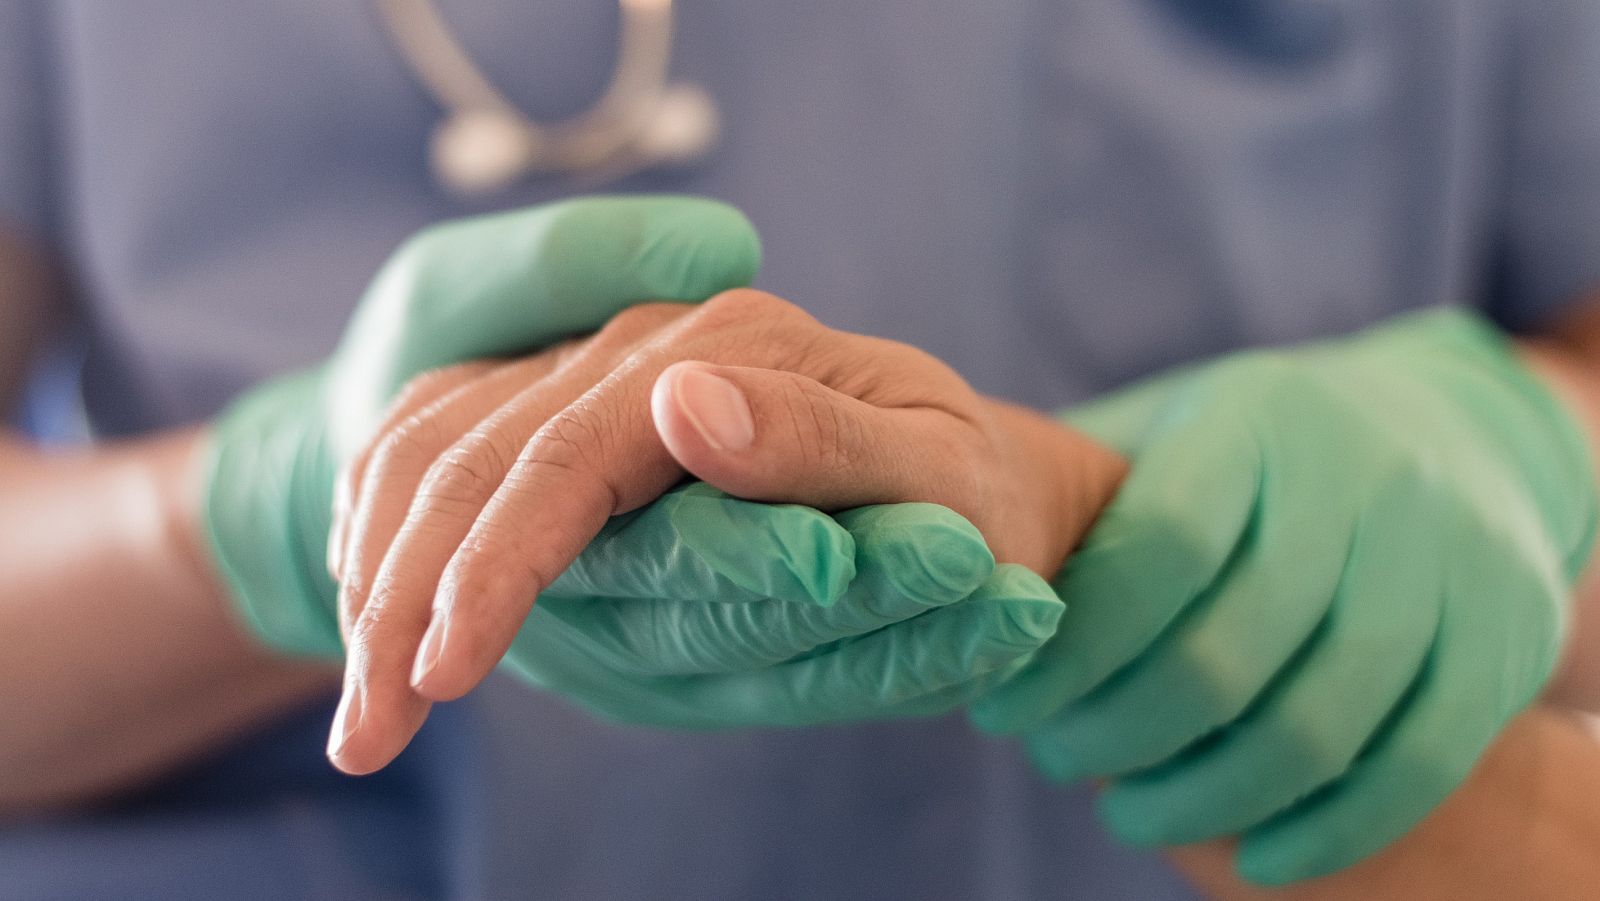 Nueva ley de eutanasia: solo para enfermedad "grave e incurable" y siempre a petición del paciente